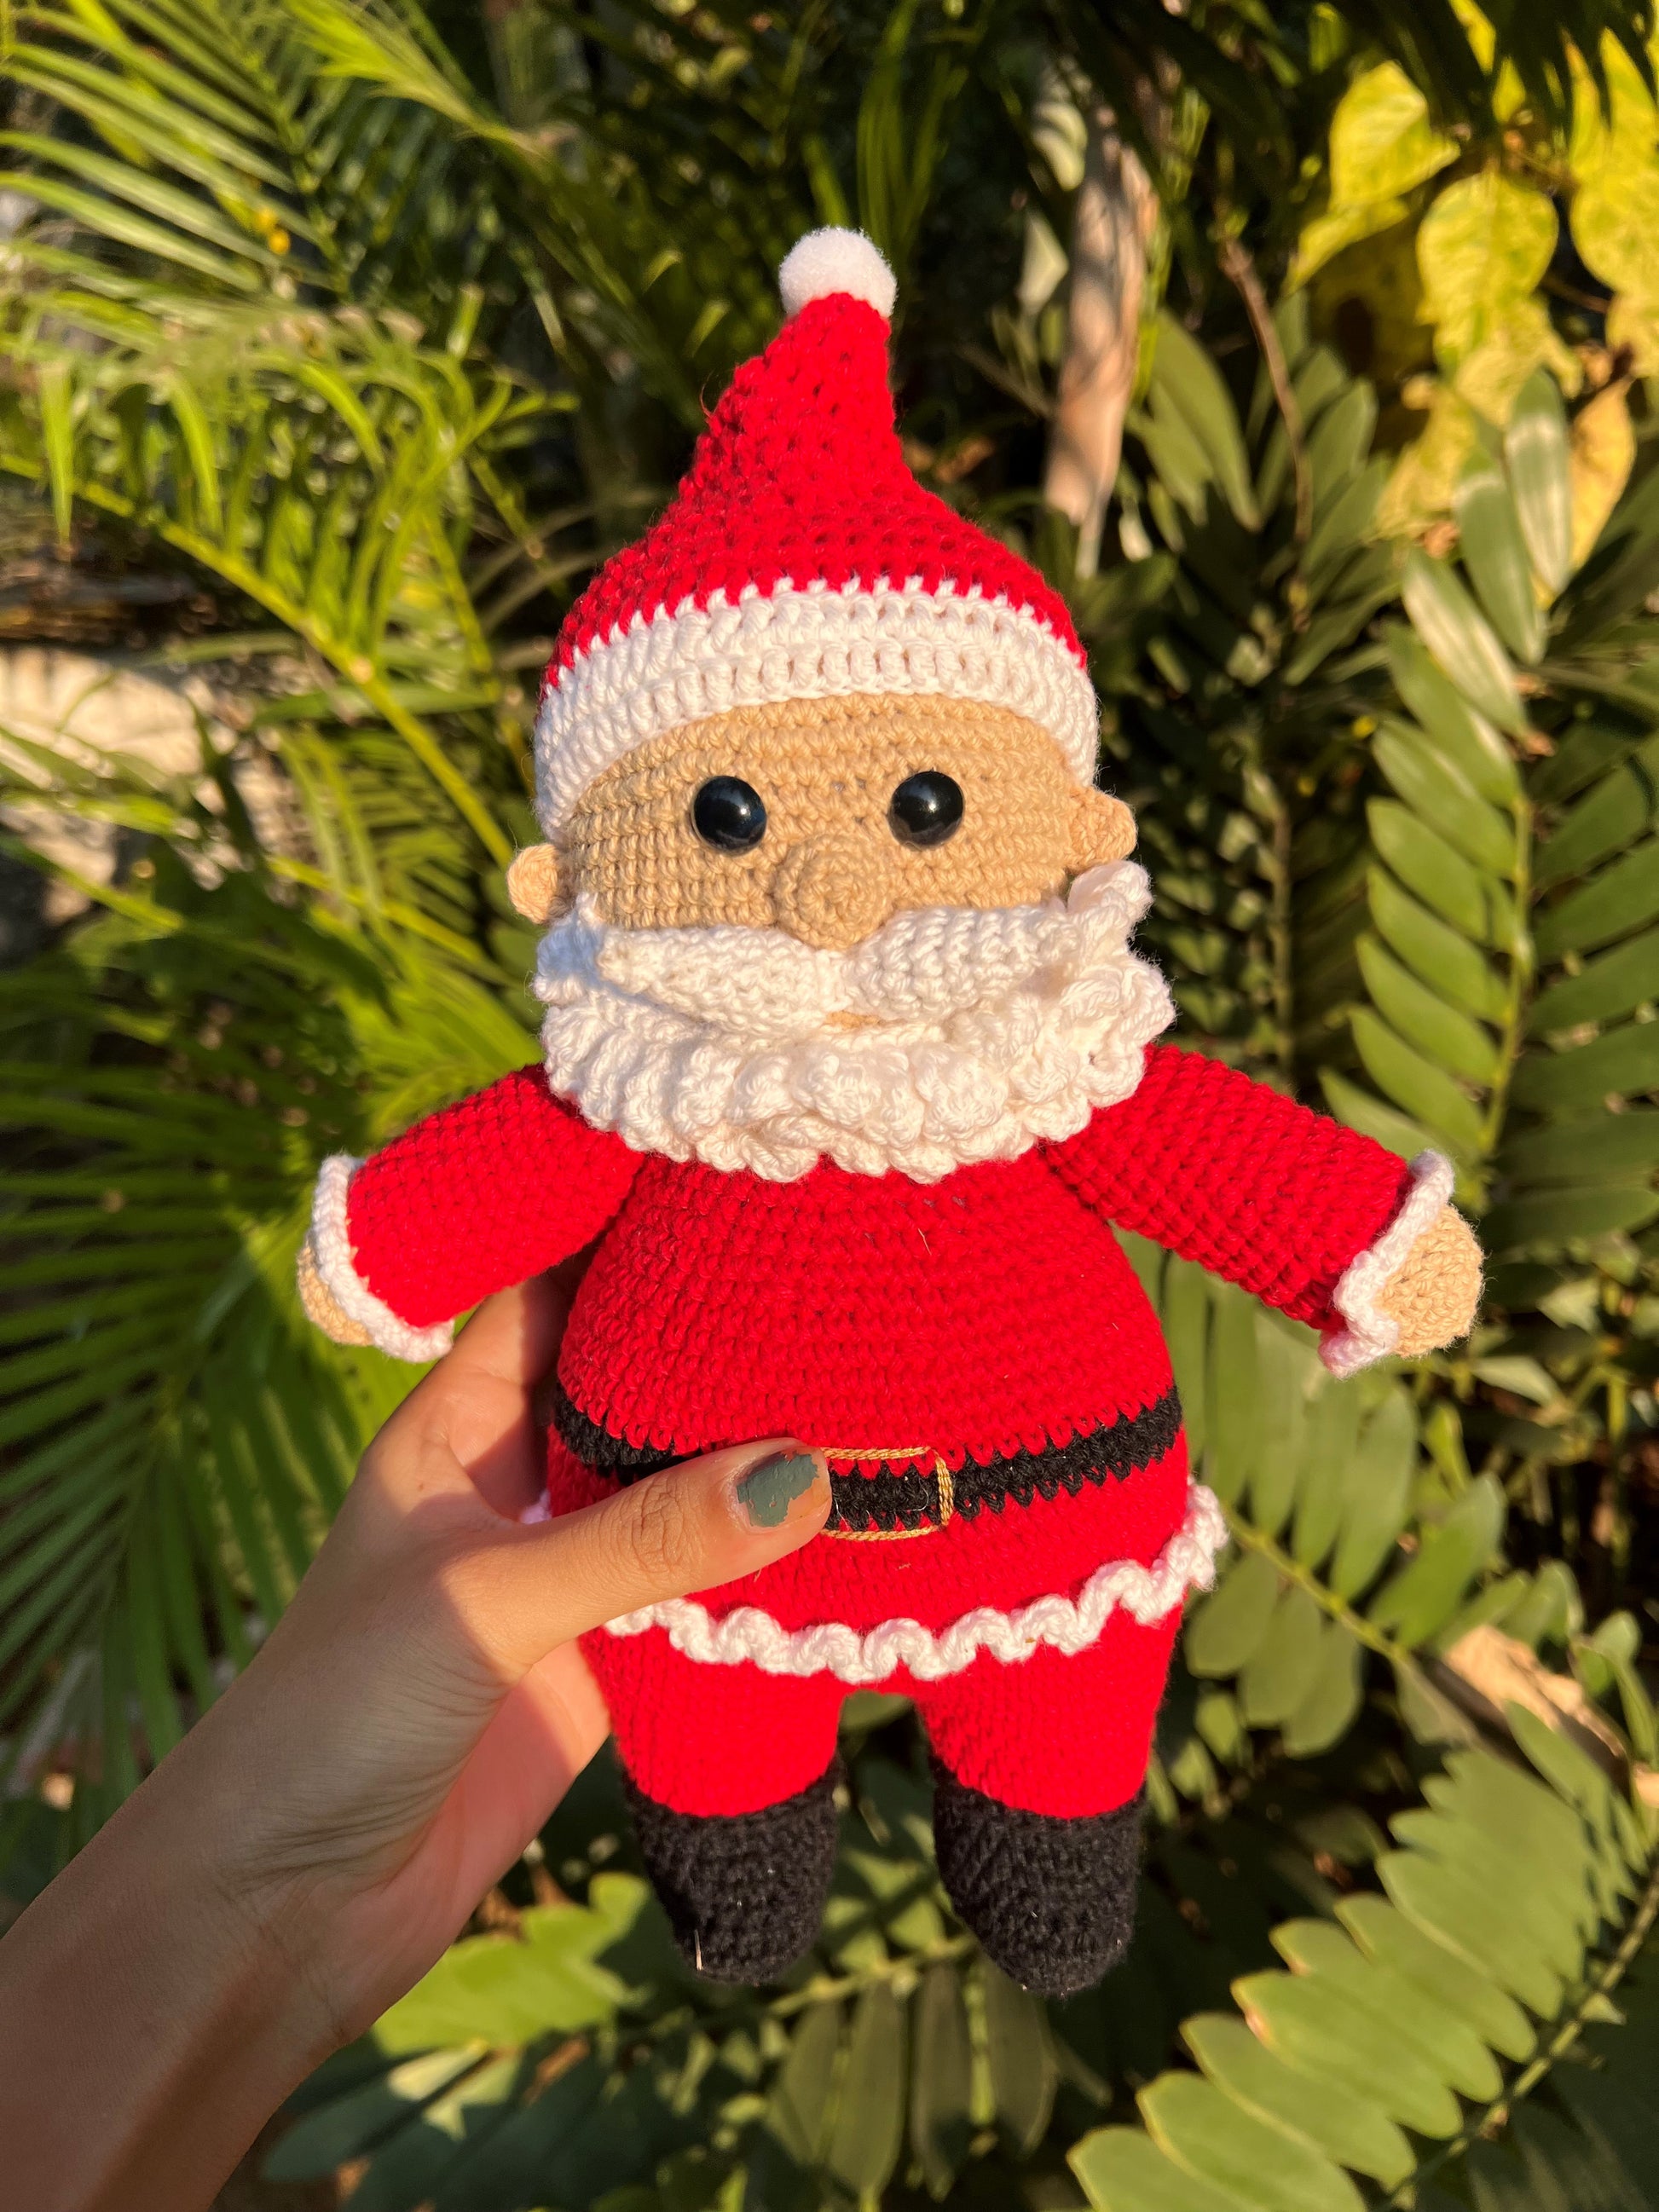 Weloille Santa Claus Crochet Cute Deer Christmas, Crochet Kit For Beginners  Kids, Infant Knitted Doll, Toy For Kids Boys Girls 